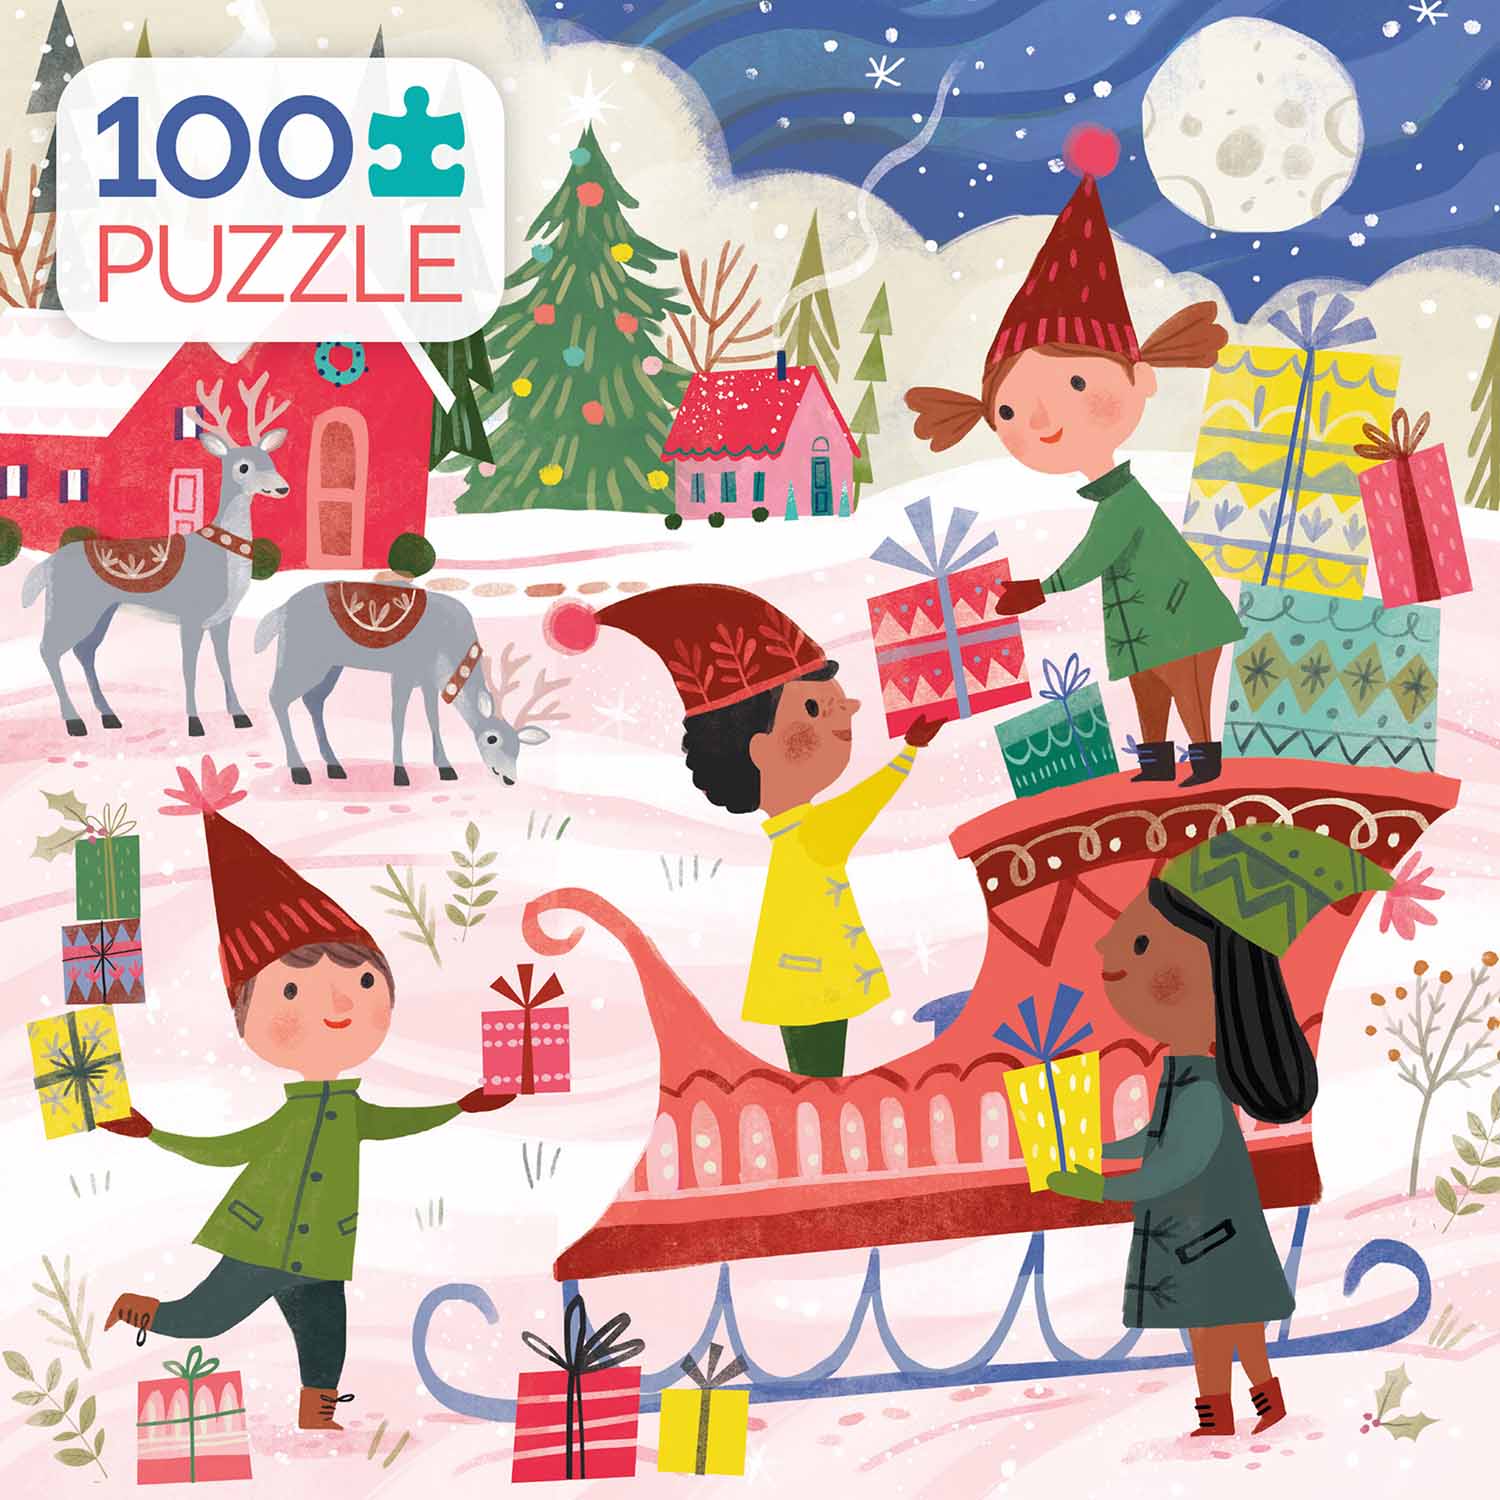 Hoiday Sleighride Christmas Jigsaw Puzzle